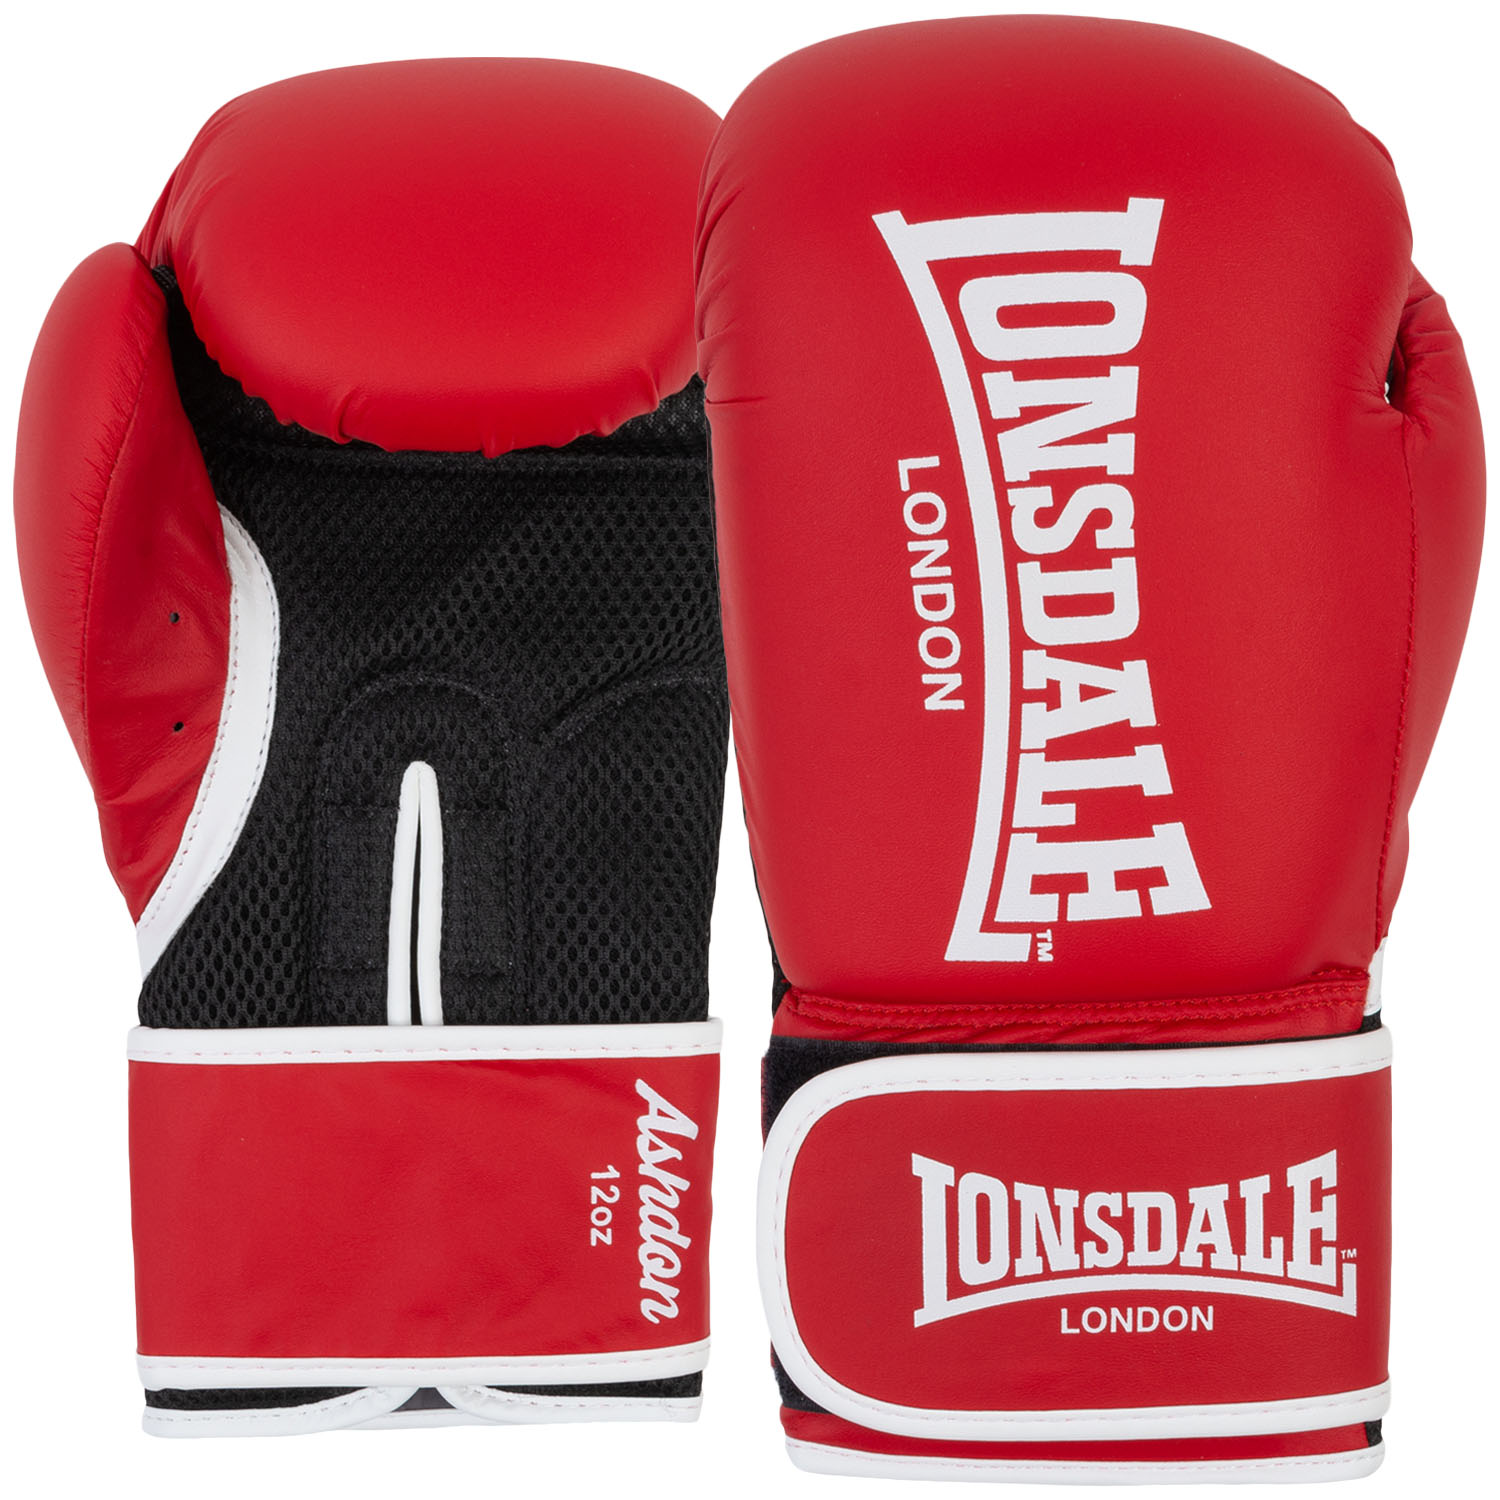 Lonsdale Boxing Gloves, Ashdon, red-white, 12 Oz